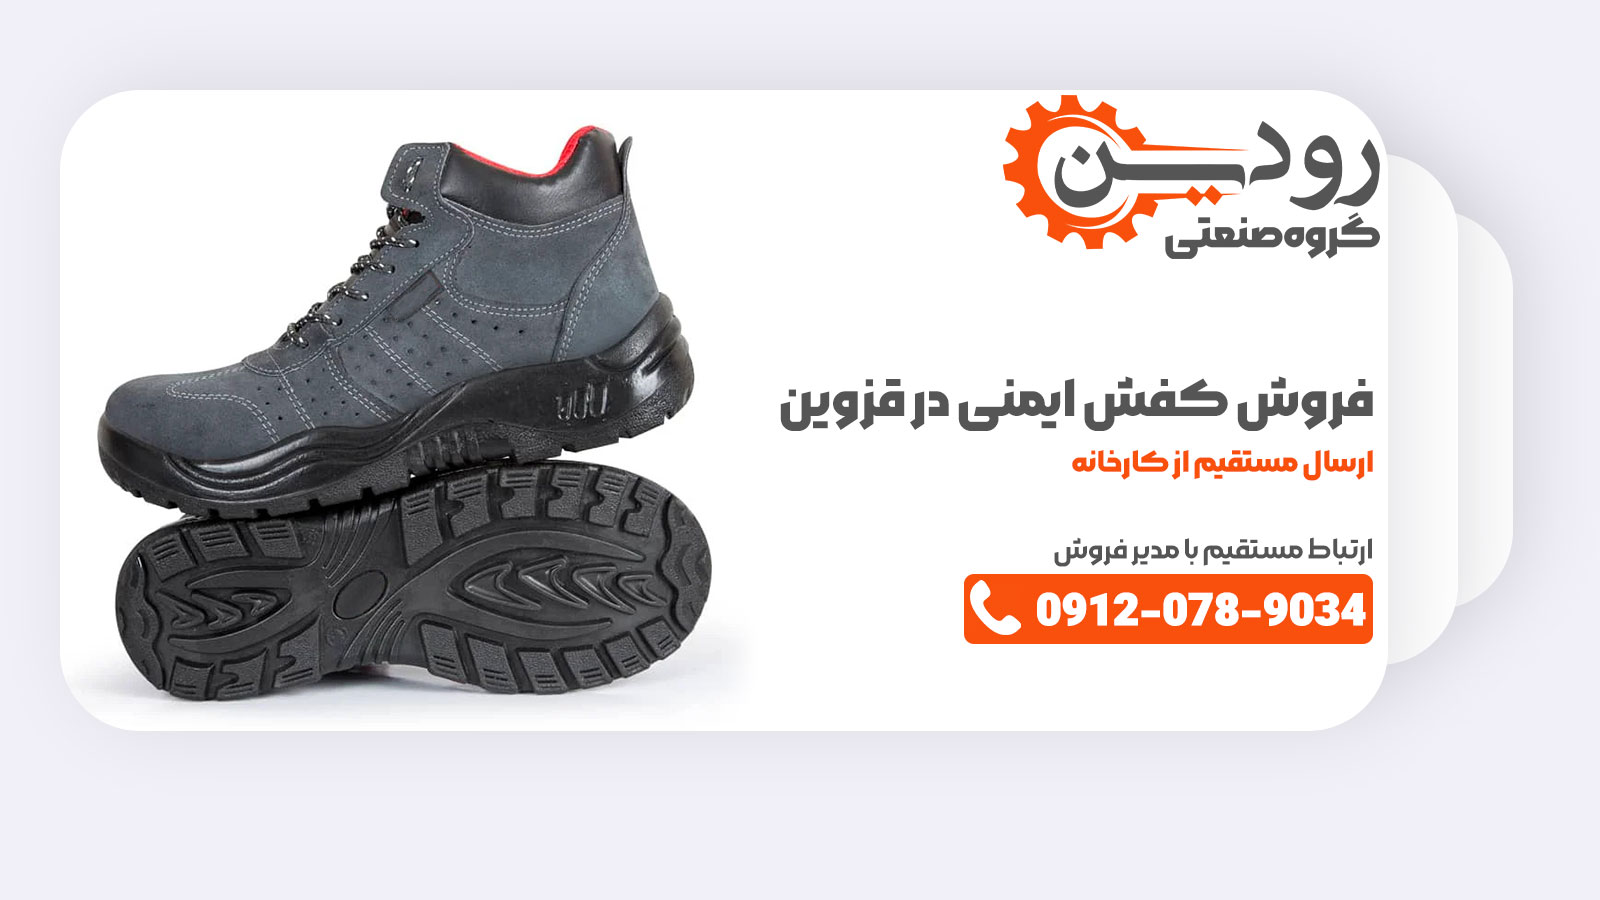 قزوین دارای معتبر ترین کارخانه تولید کفش ایمنی در کشور ایران است که صادرات بسیار زیادی هم دارد.